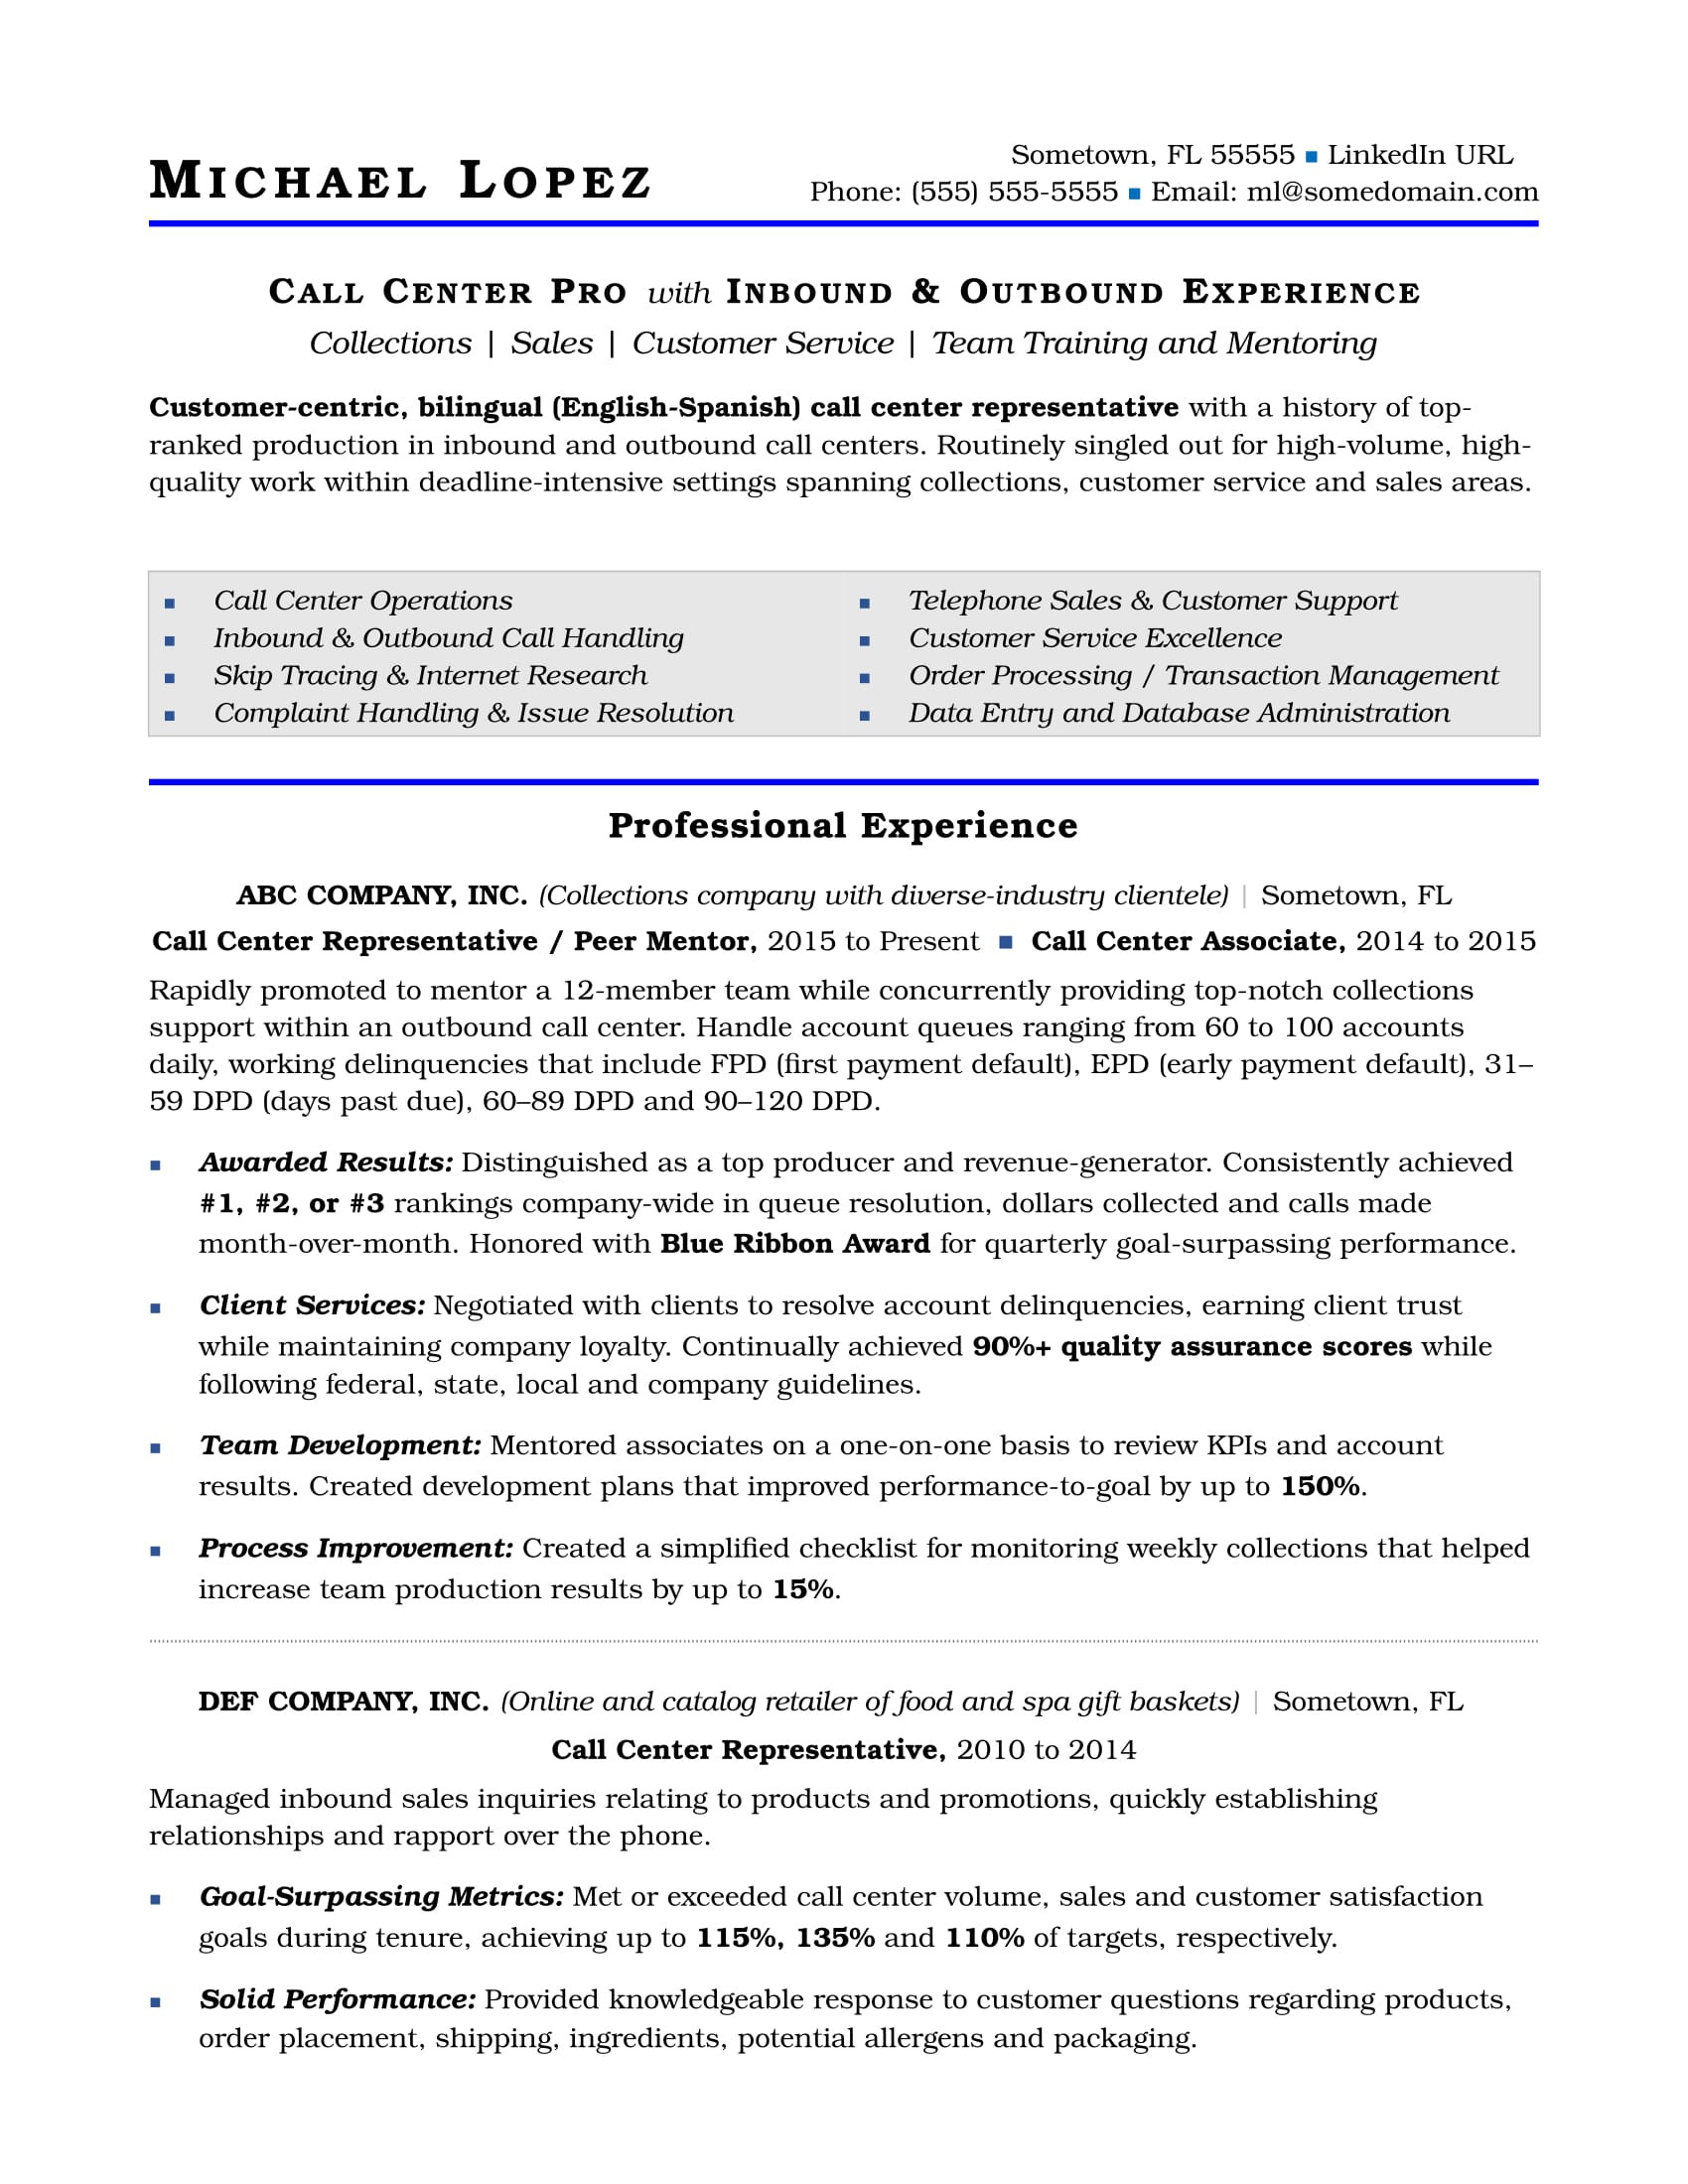 Beginner Resume Sample for Call Center Call Center Resume Sample Monster.com